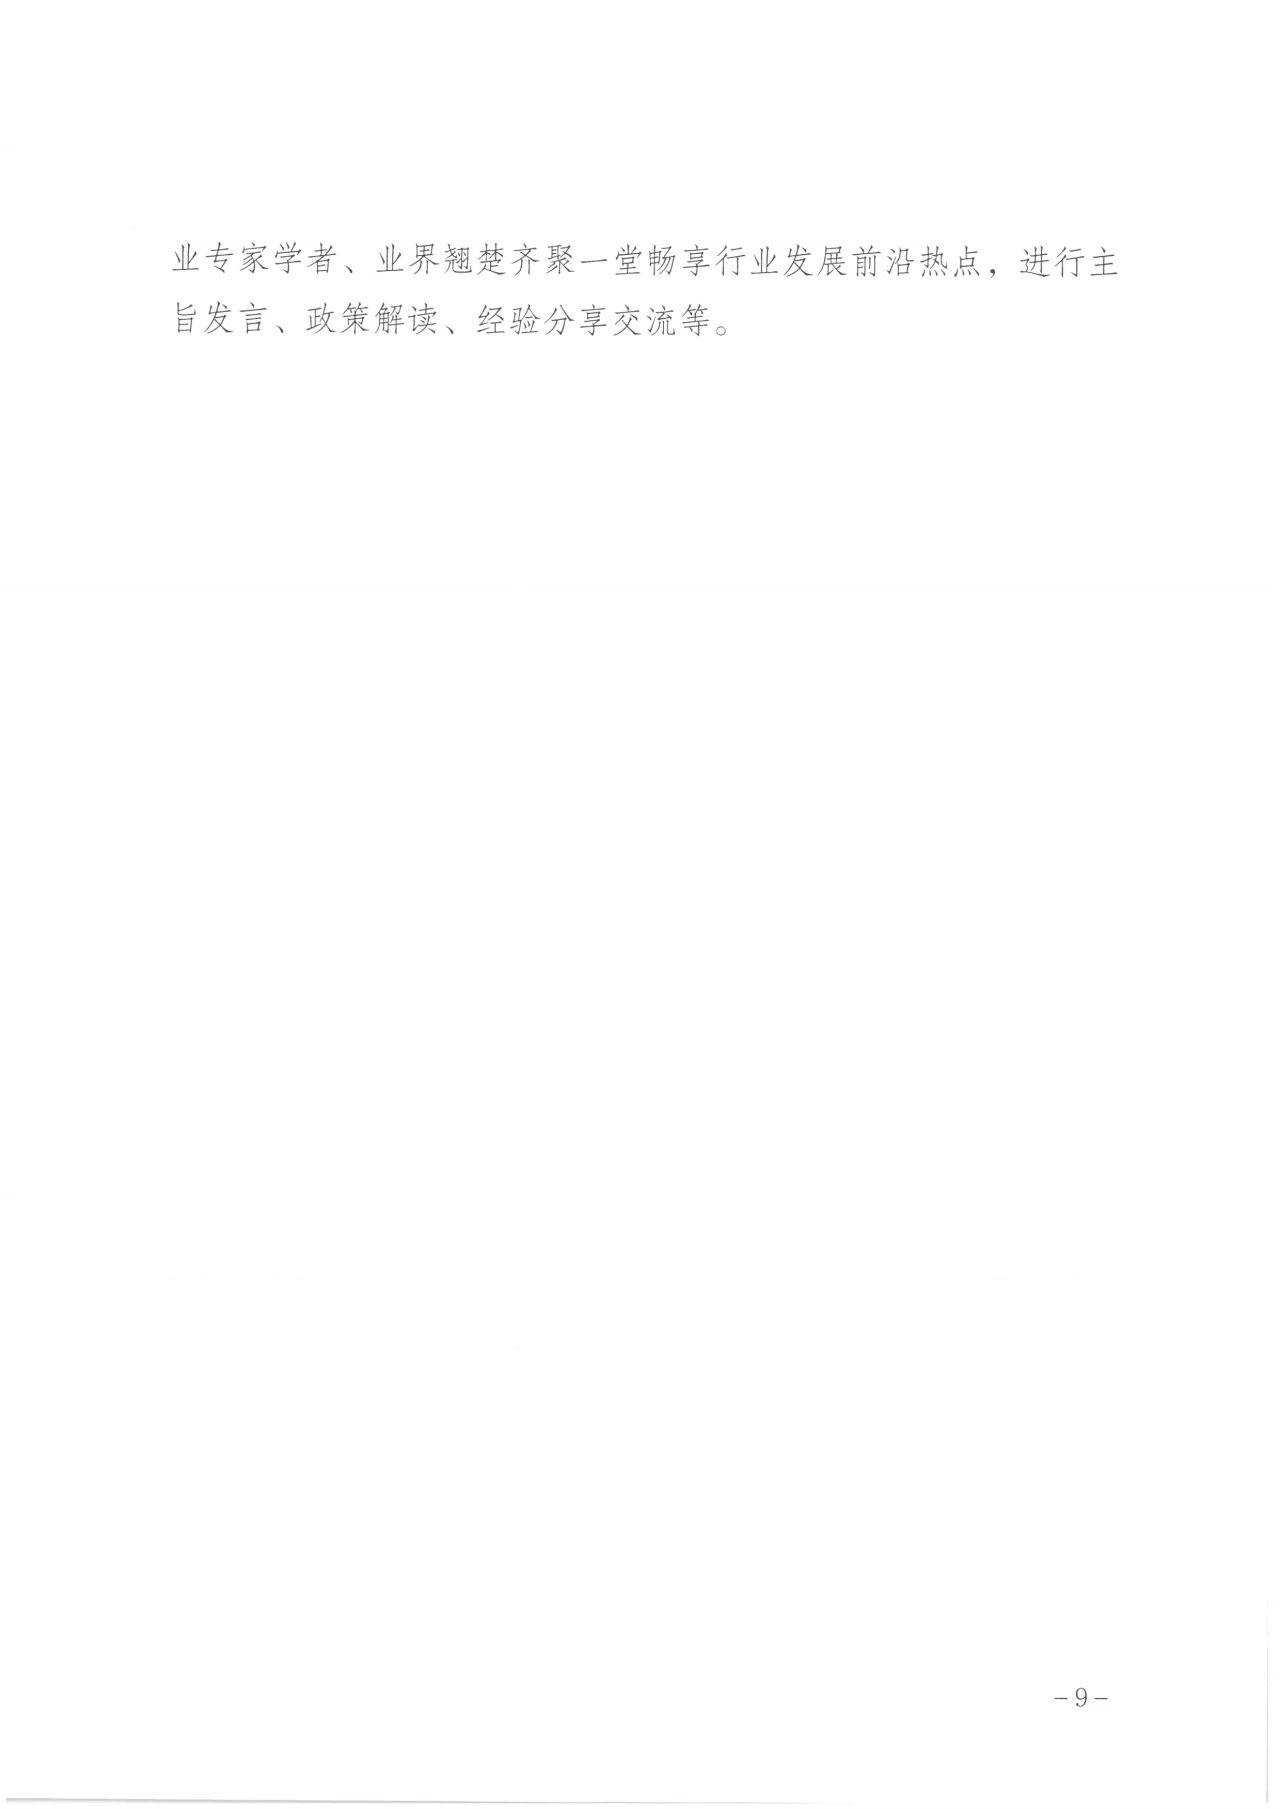 通知  广州市民政局关于邀请组织参加第八届广州老博会的函9.jpg